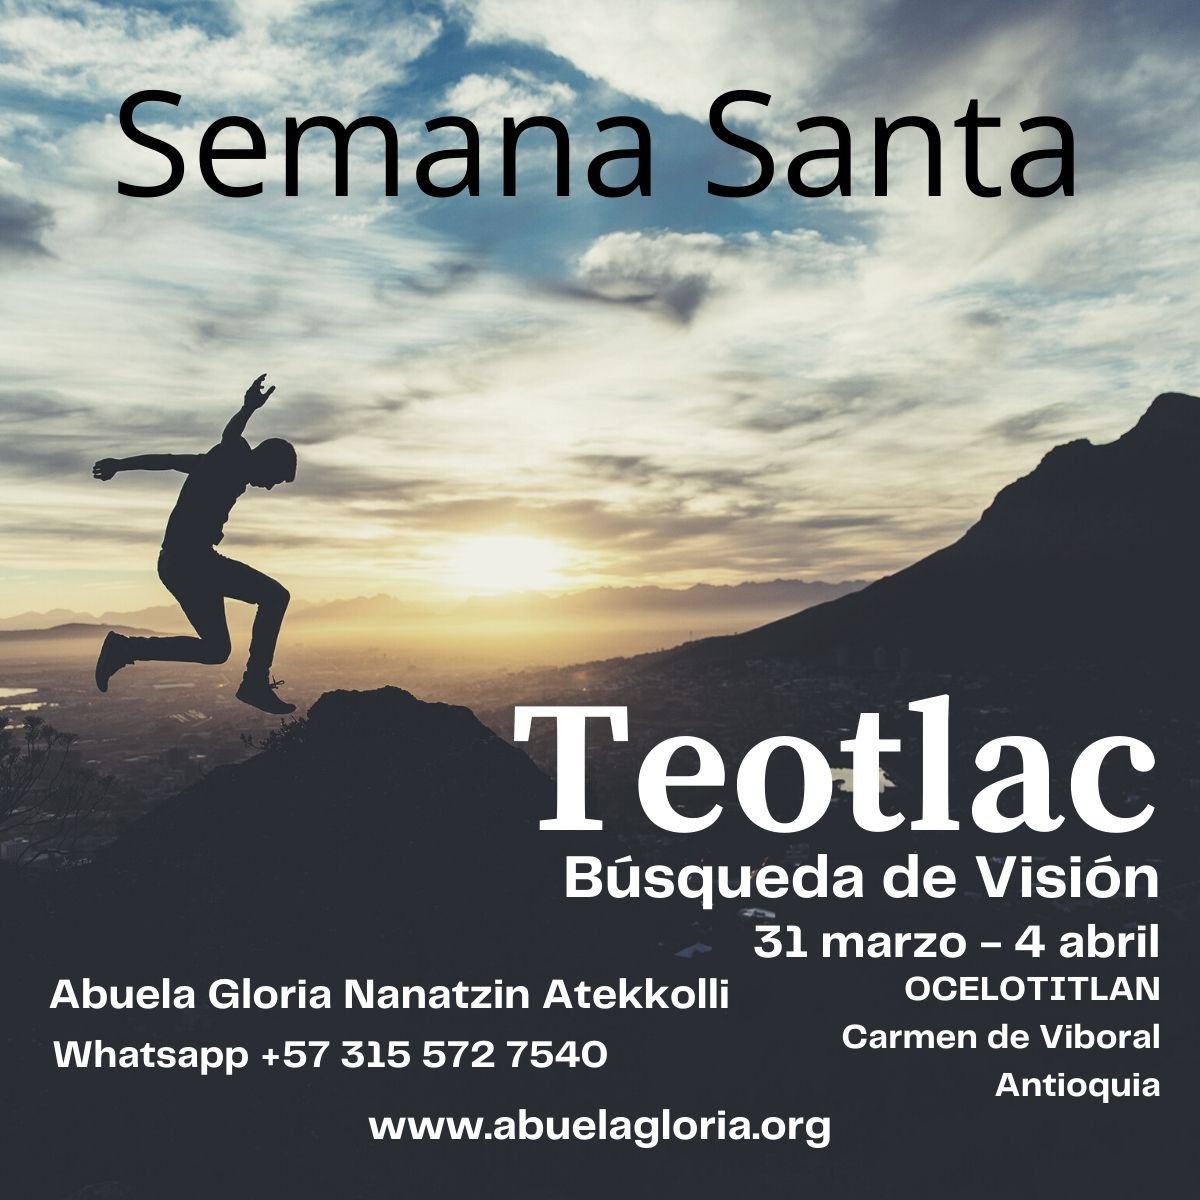 TEOTLAC busqueda de visión Semana Santa 31 marzo al 4 abril 2021